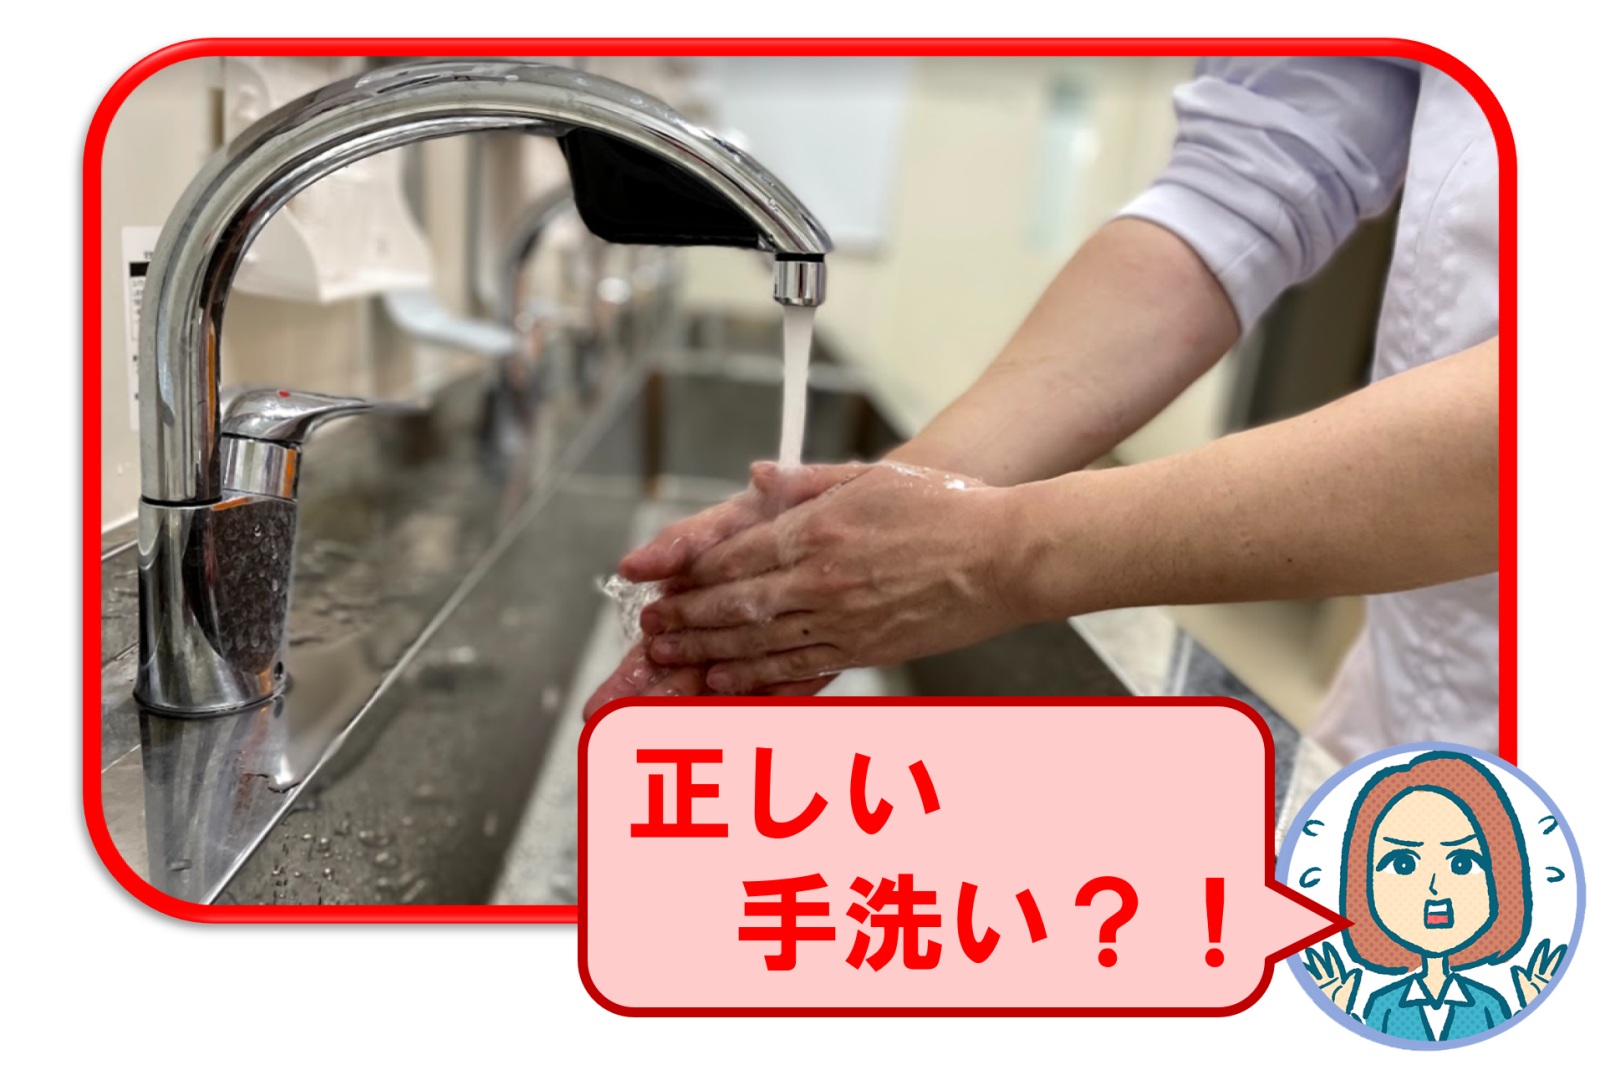 その手洗い、本当に正しいですか？